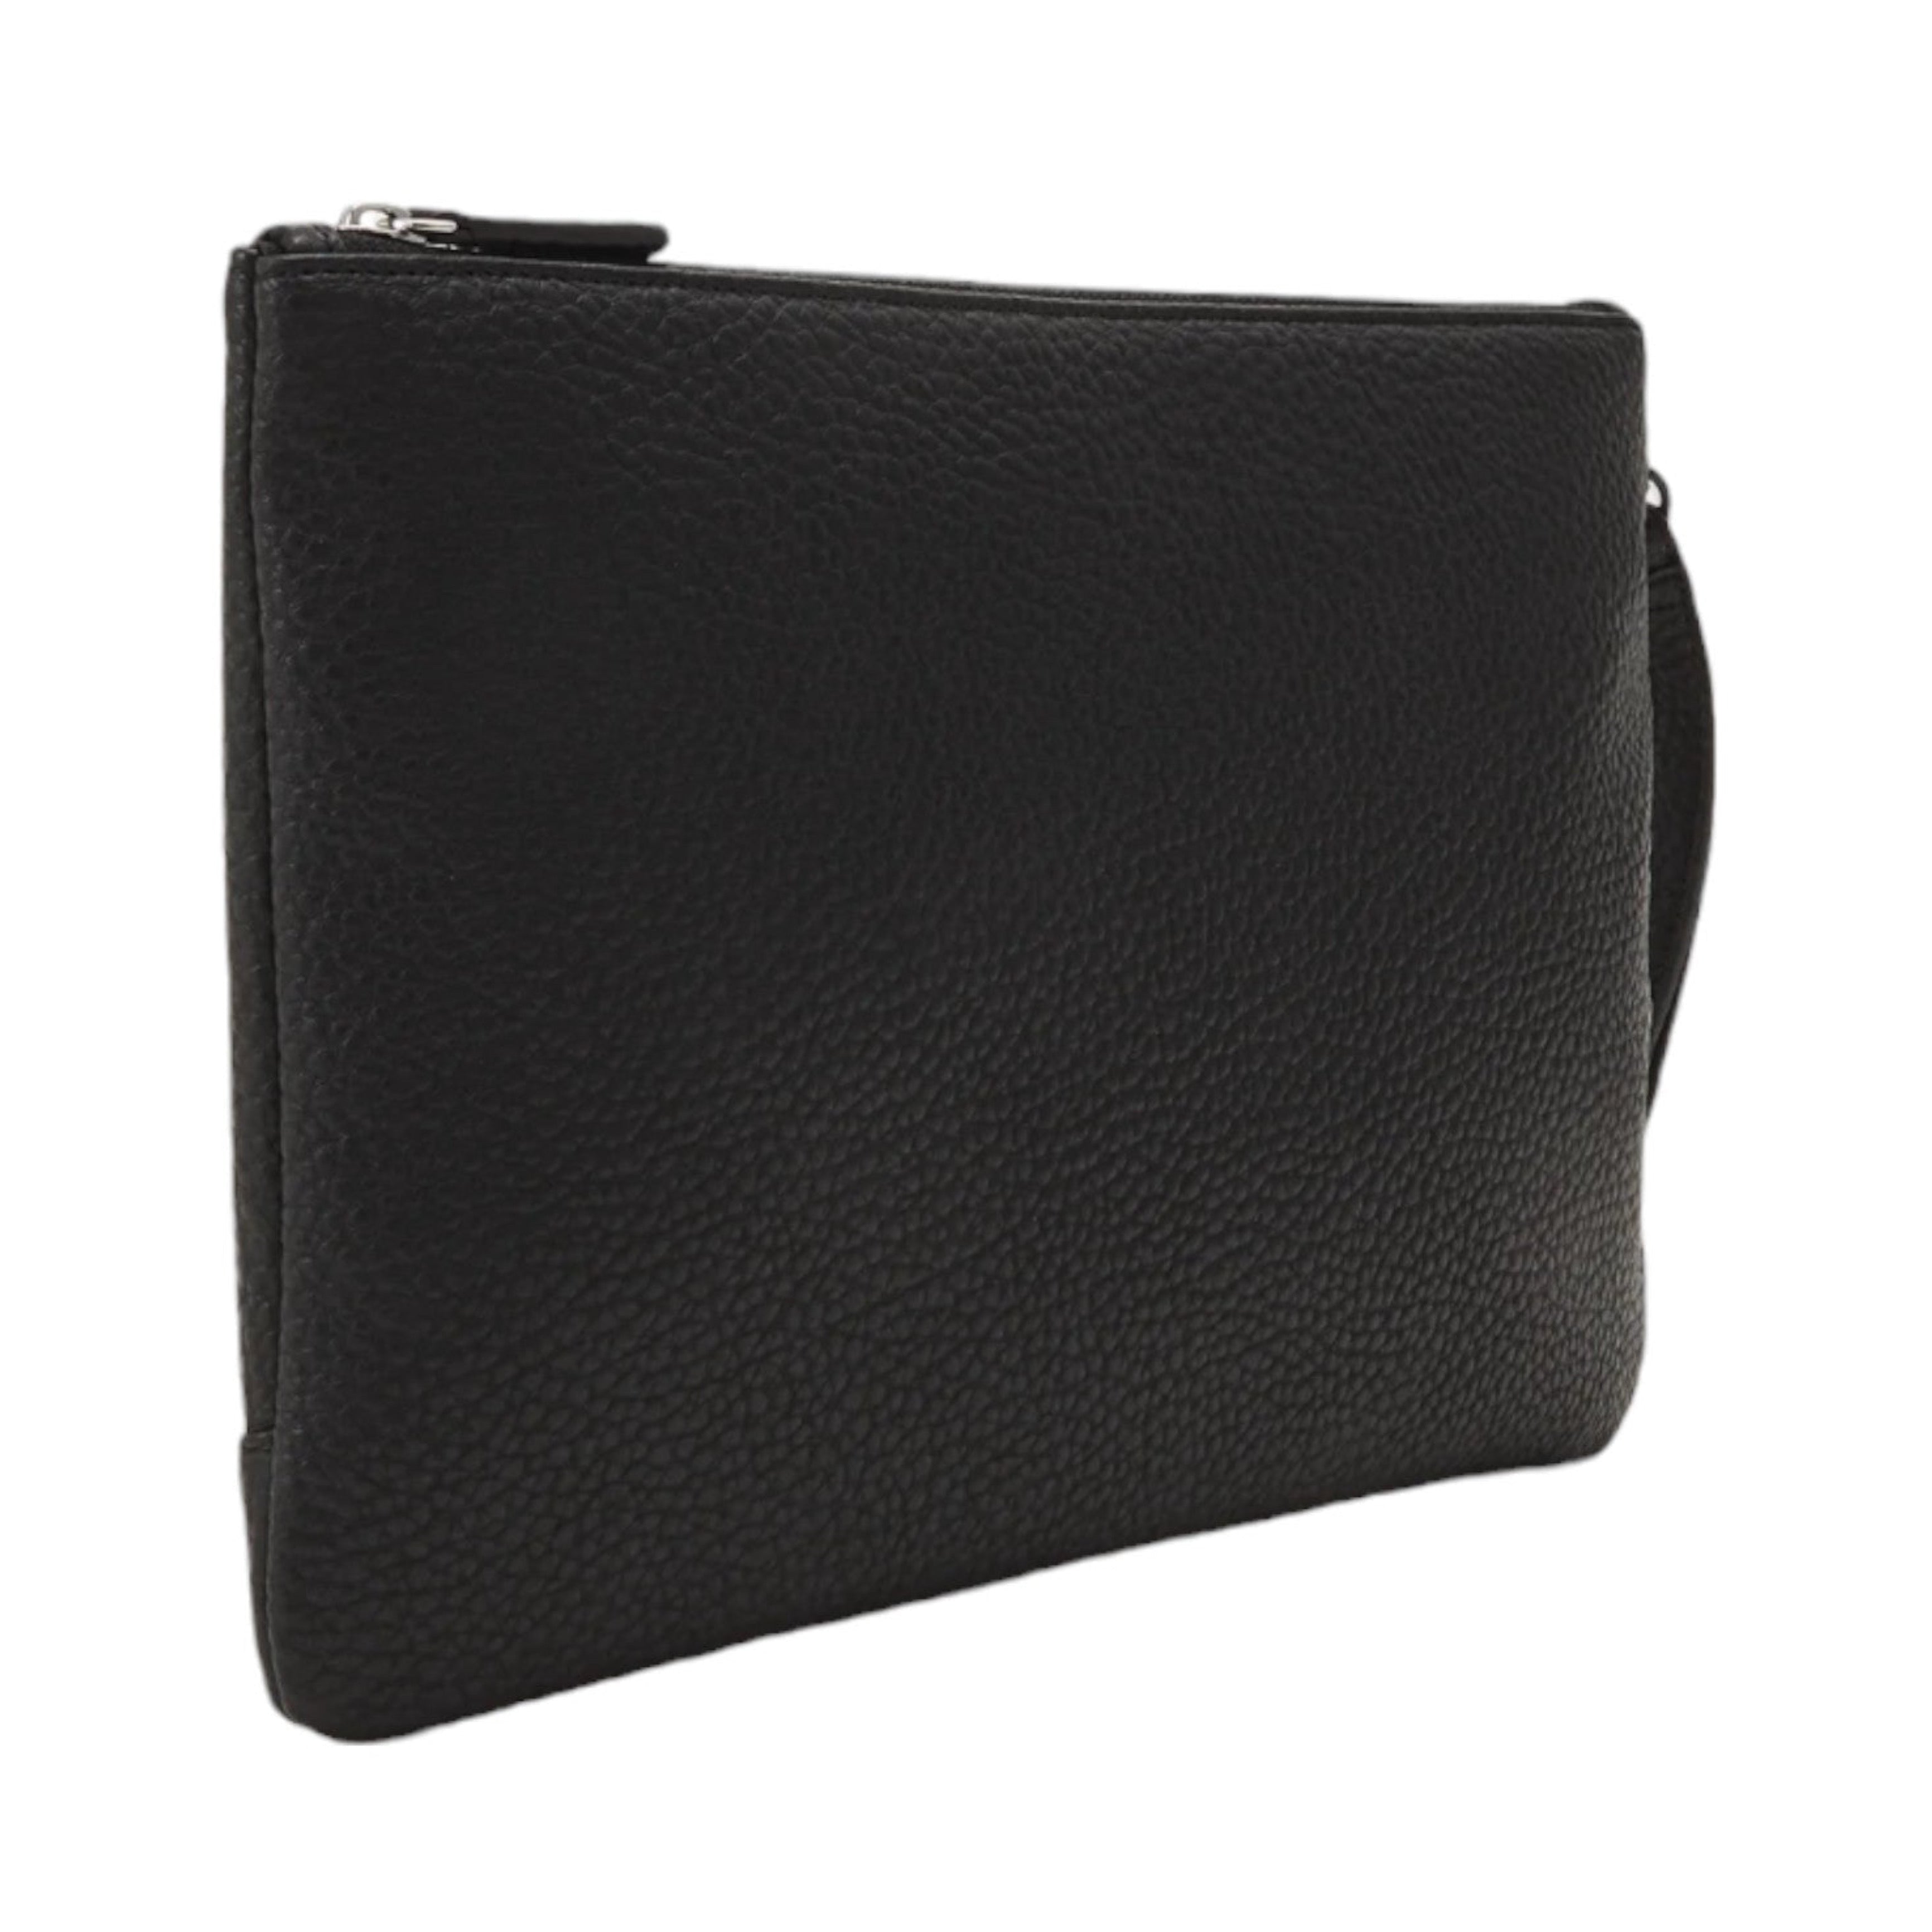 Мъжка черна бизнес клъч чанта Armani Exchange 958543 CC828 от нова колекция